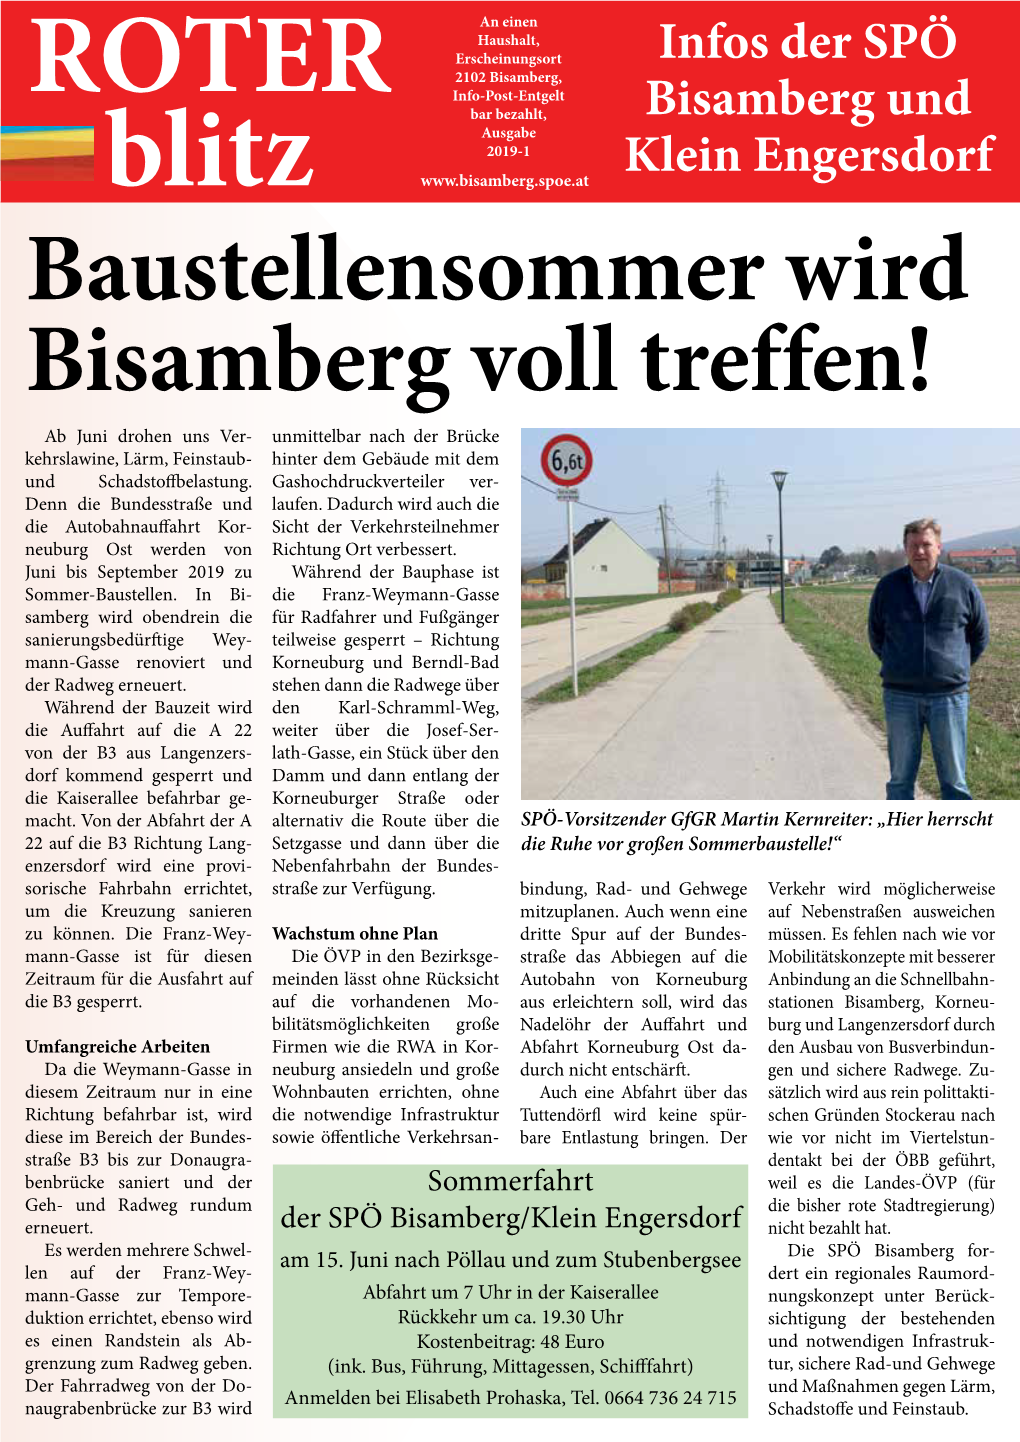 Baustellensommer Wird Bisamberg Voll Treffen!